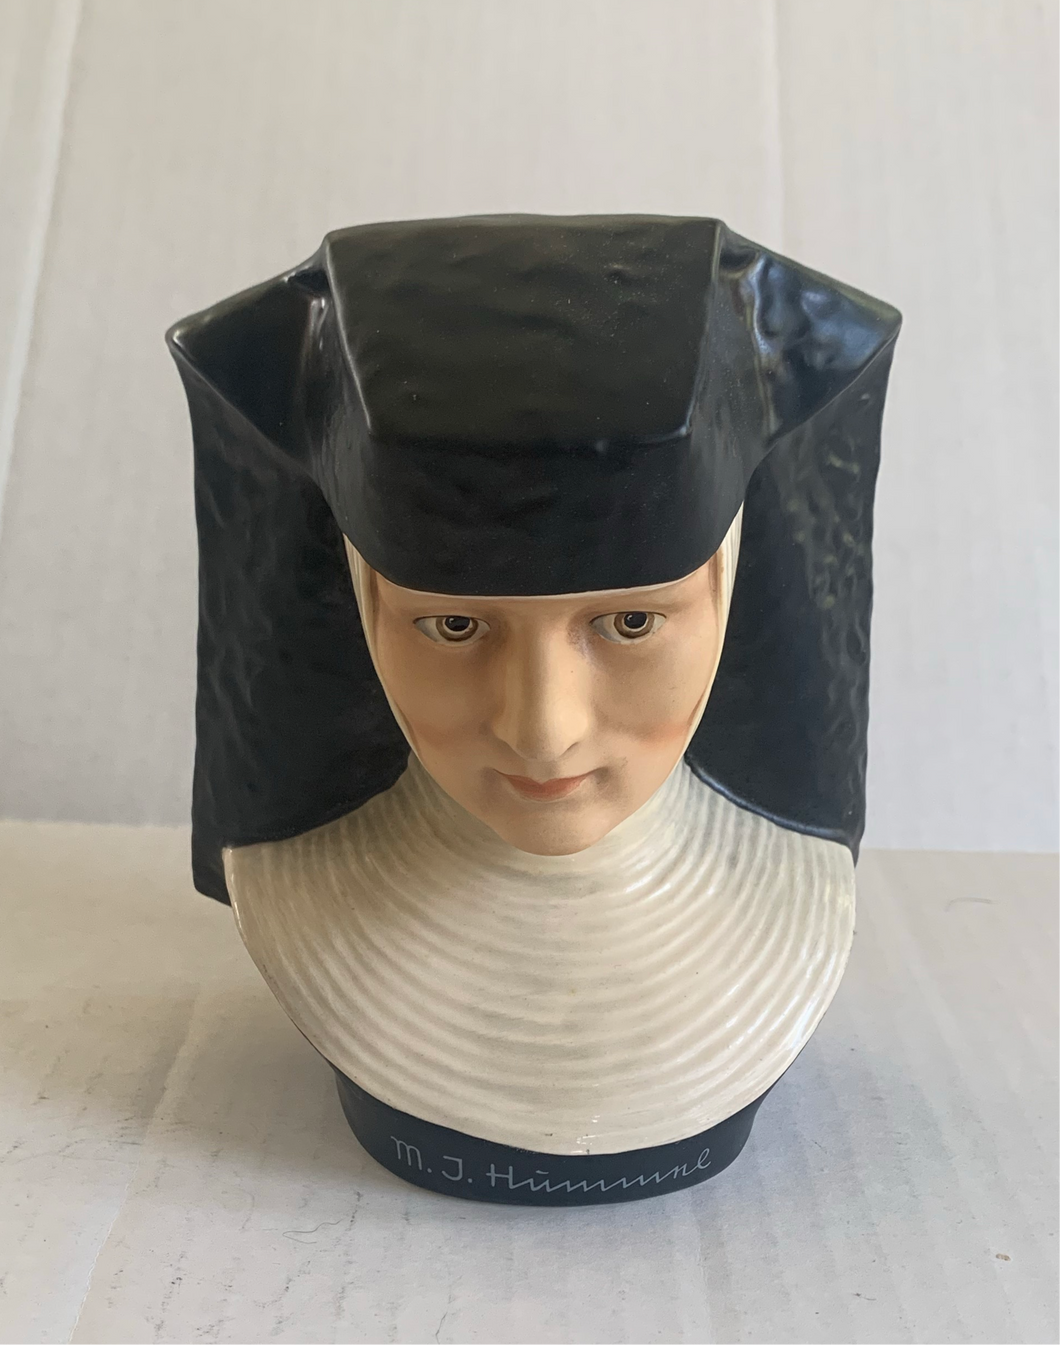 Vintage 1978 Goebel Porcelain MJ Hummel Nun Bust Figurine